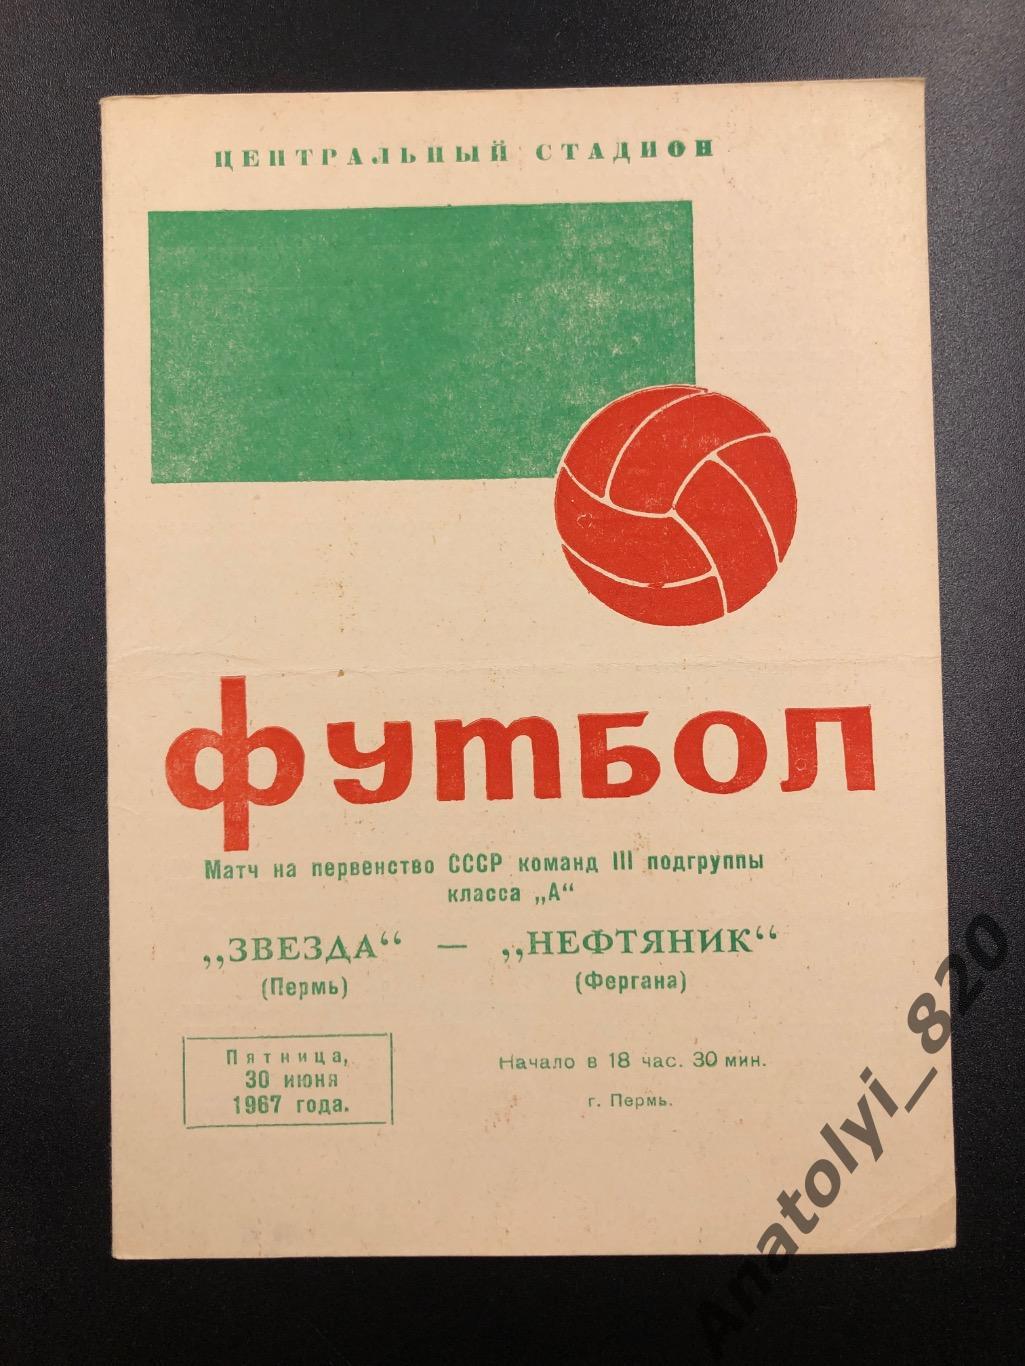 Звезда Пермь - Нефтяник Фергана, 30.06.1967